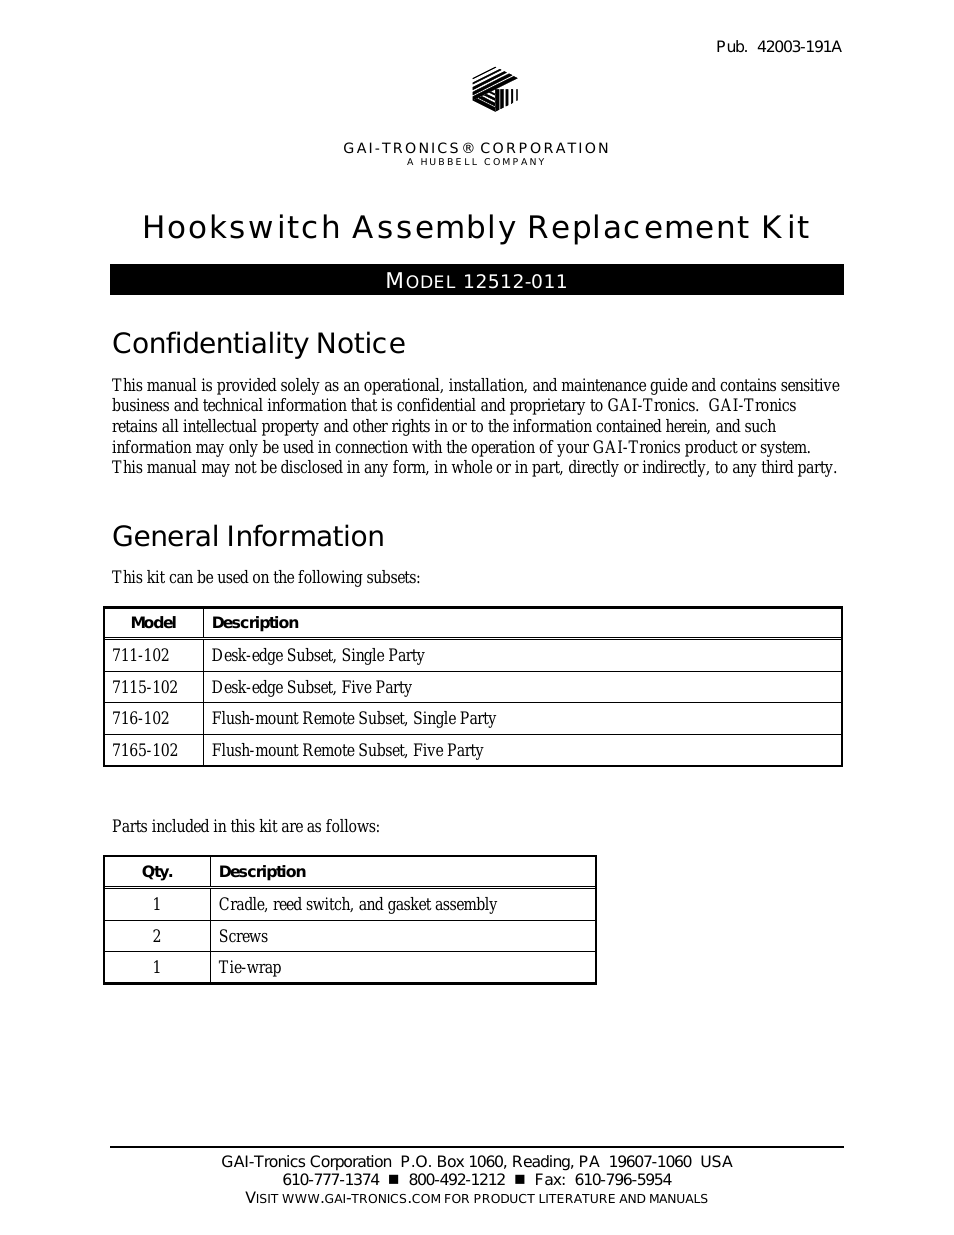 12512-011 Hookswitch Assembly Kit